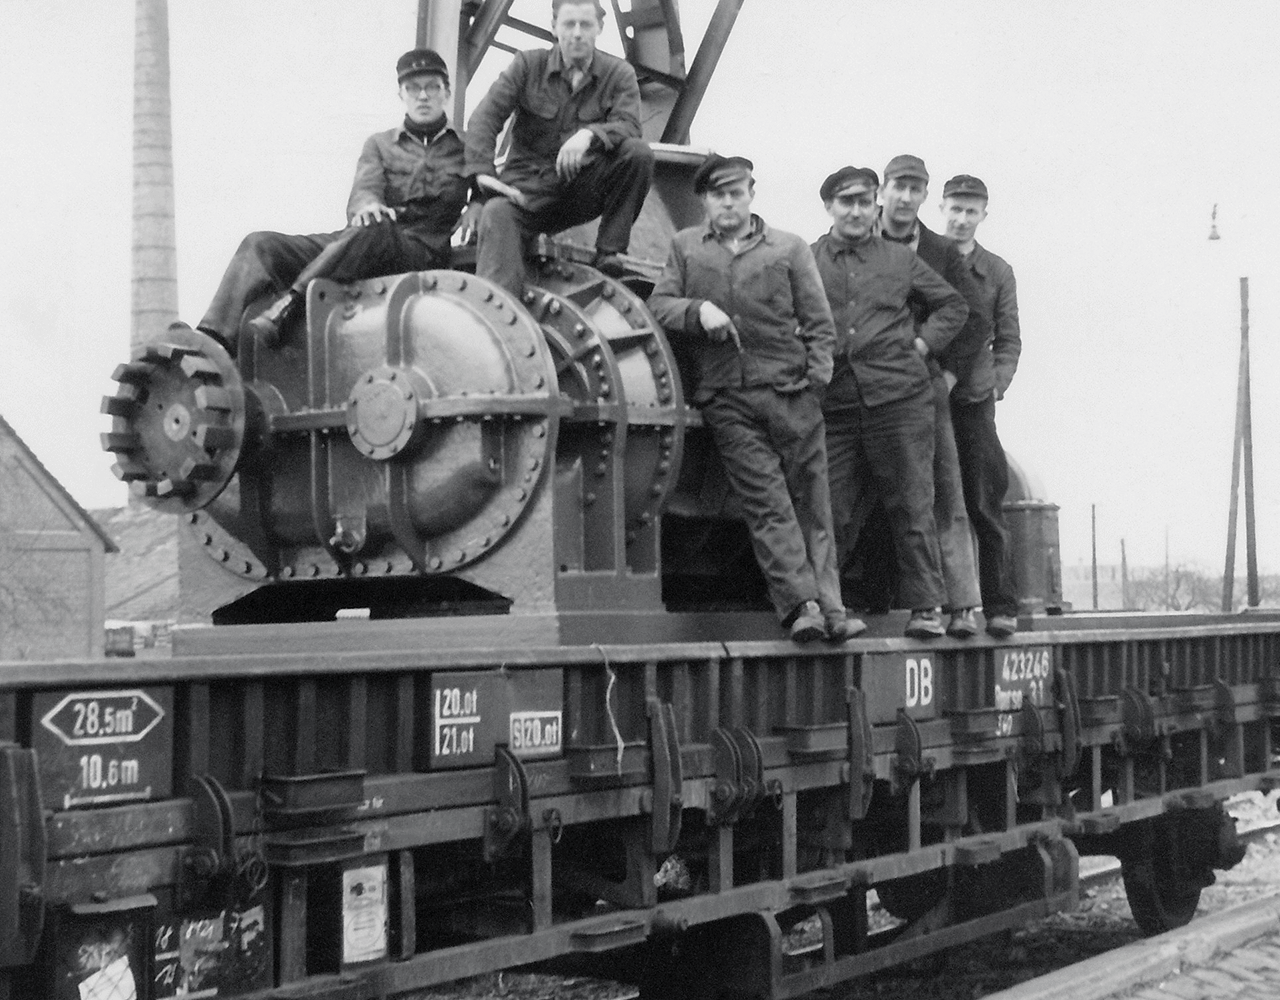 Obrázek zaměstnanců sedících na objemovém dmychadle, které se odesílalo do Berlína po železniční trati